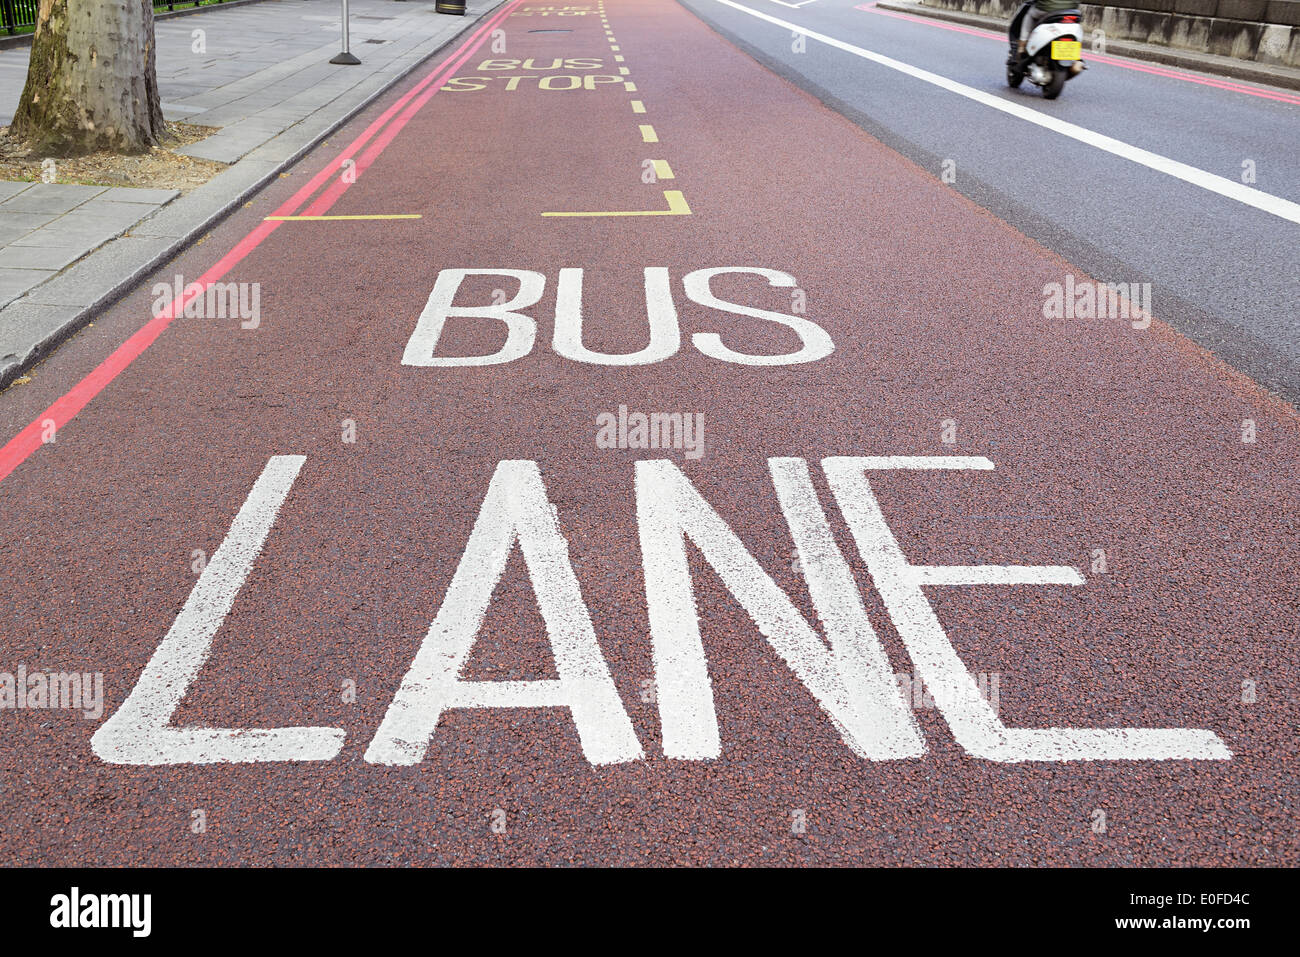 Corsia degli autobus, Londra, Regno Unito. Foto Stock